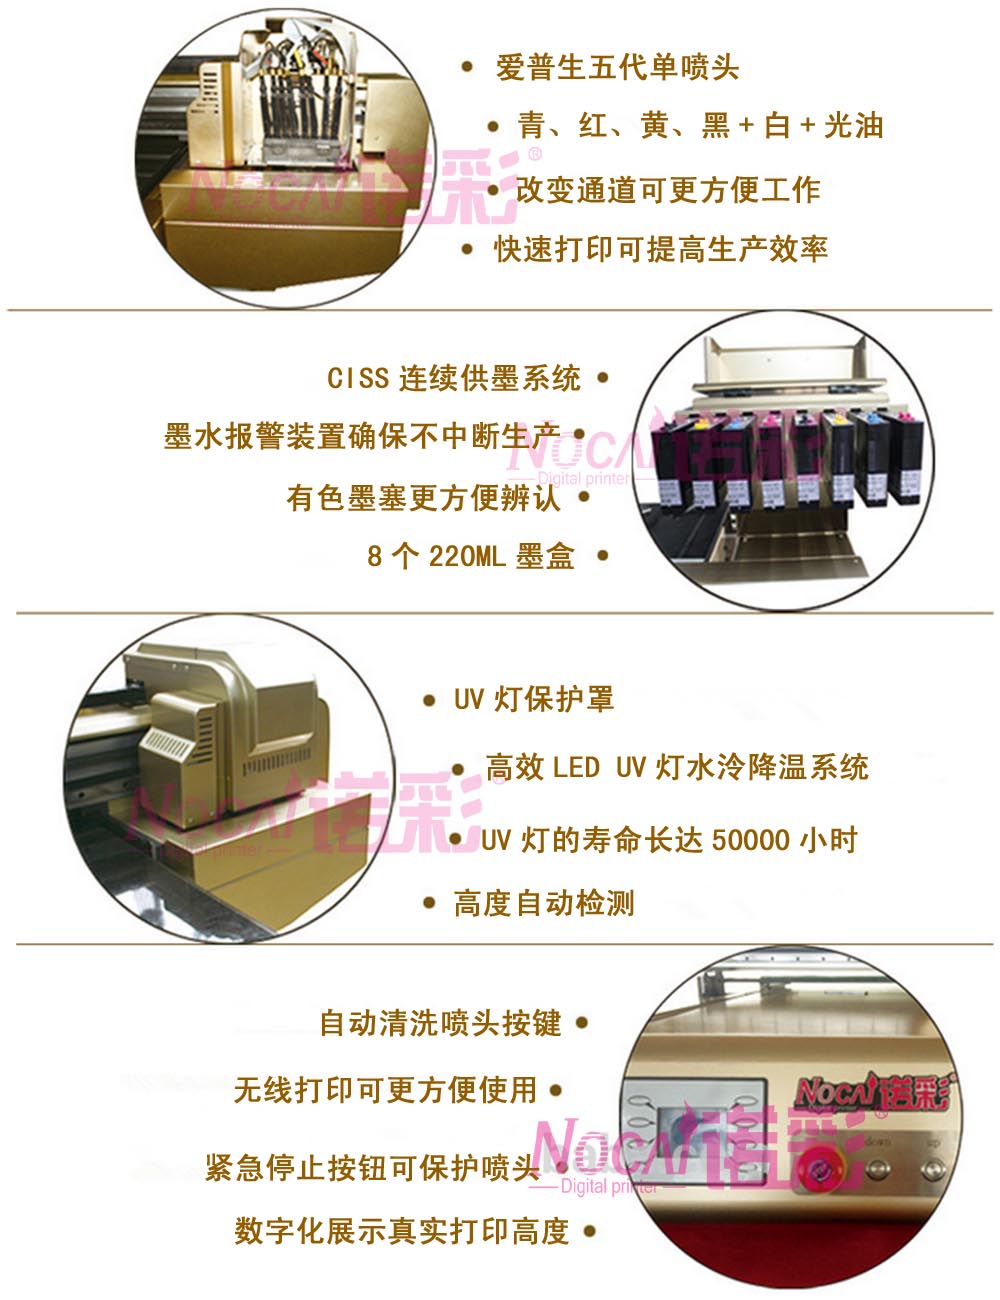 供应广州诺彩数码产品*生产的手机壳打印机，专为手机壳用户量身设计的手机壳打印机